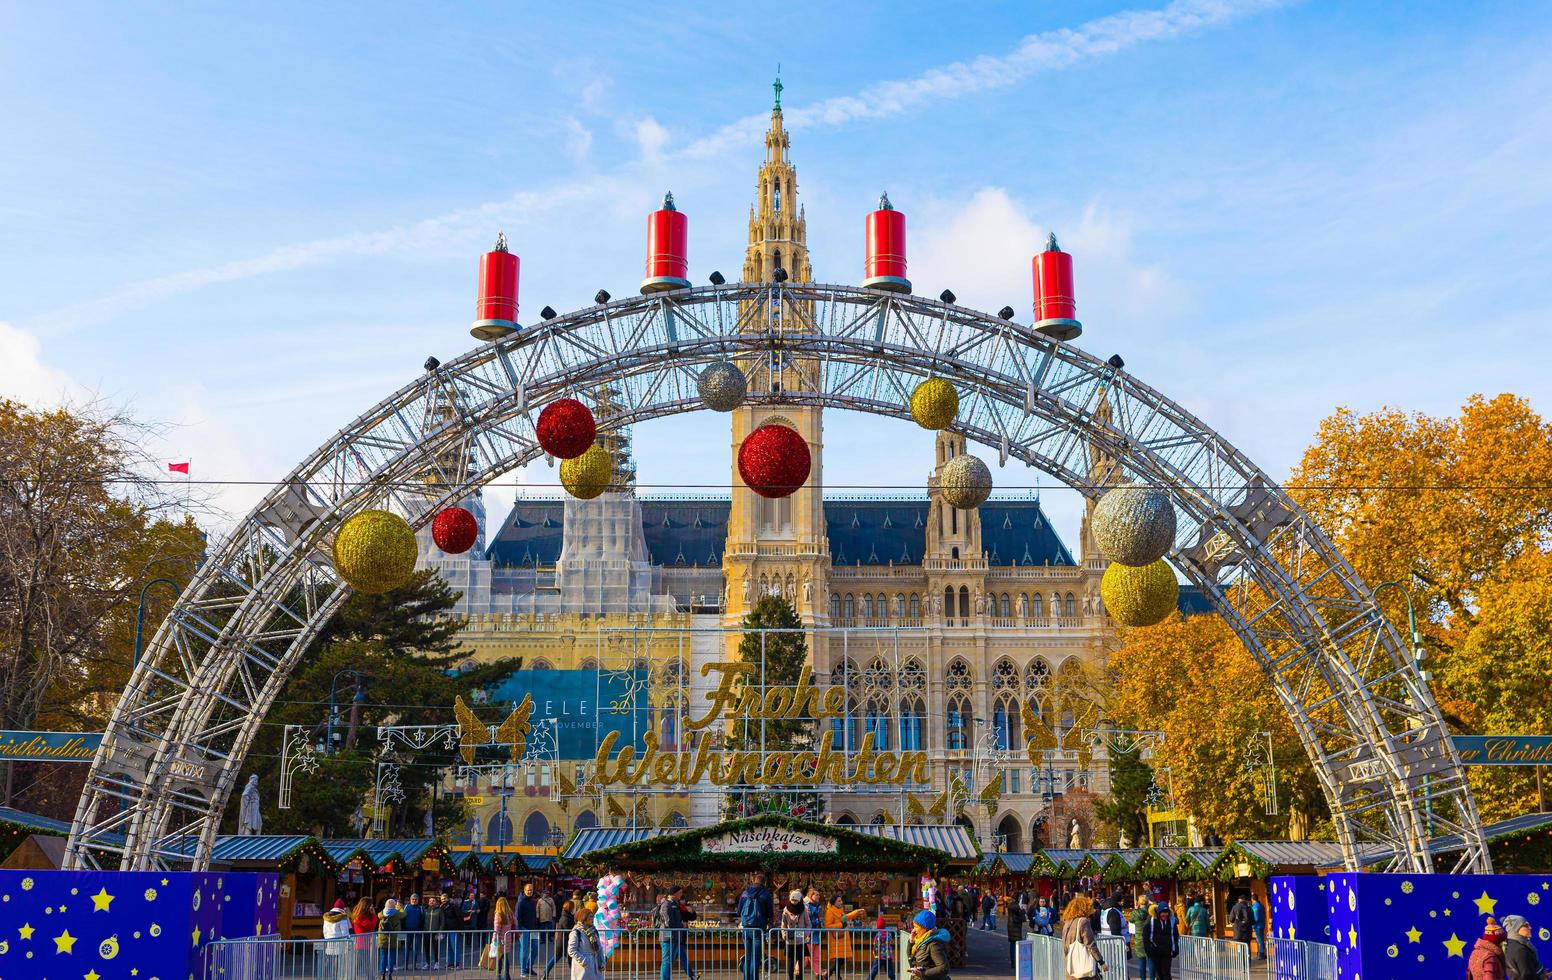 wien, österreich, 2021 - traditioneller weihnachtsmarkt mit bunten ornamenten und dekoration in wien, österreich foto